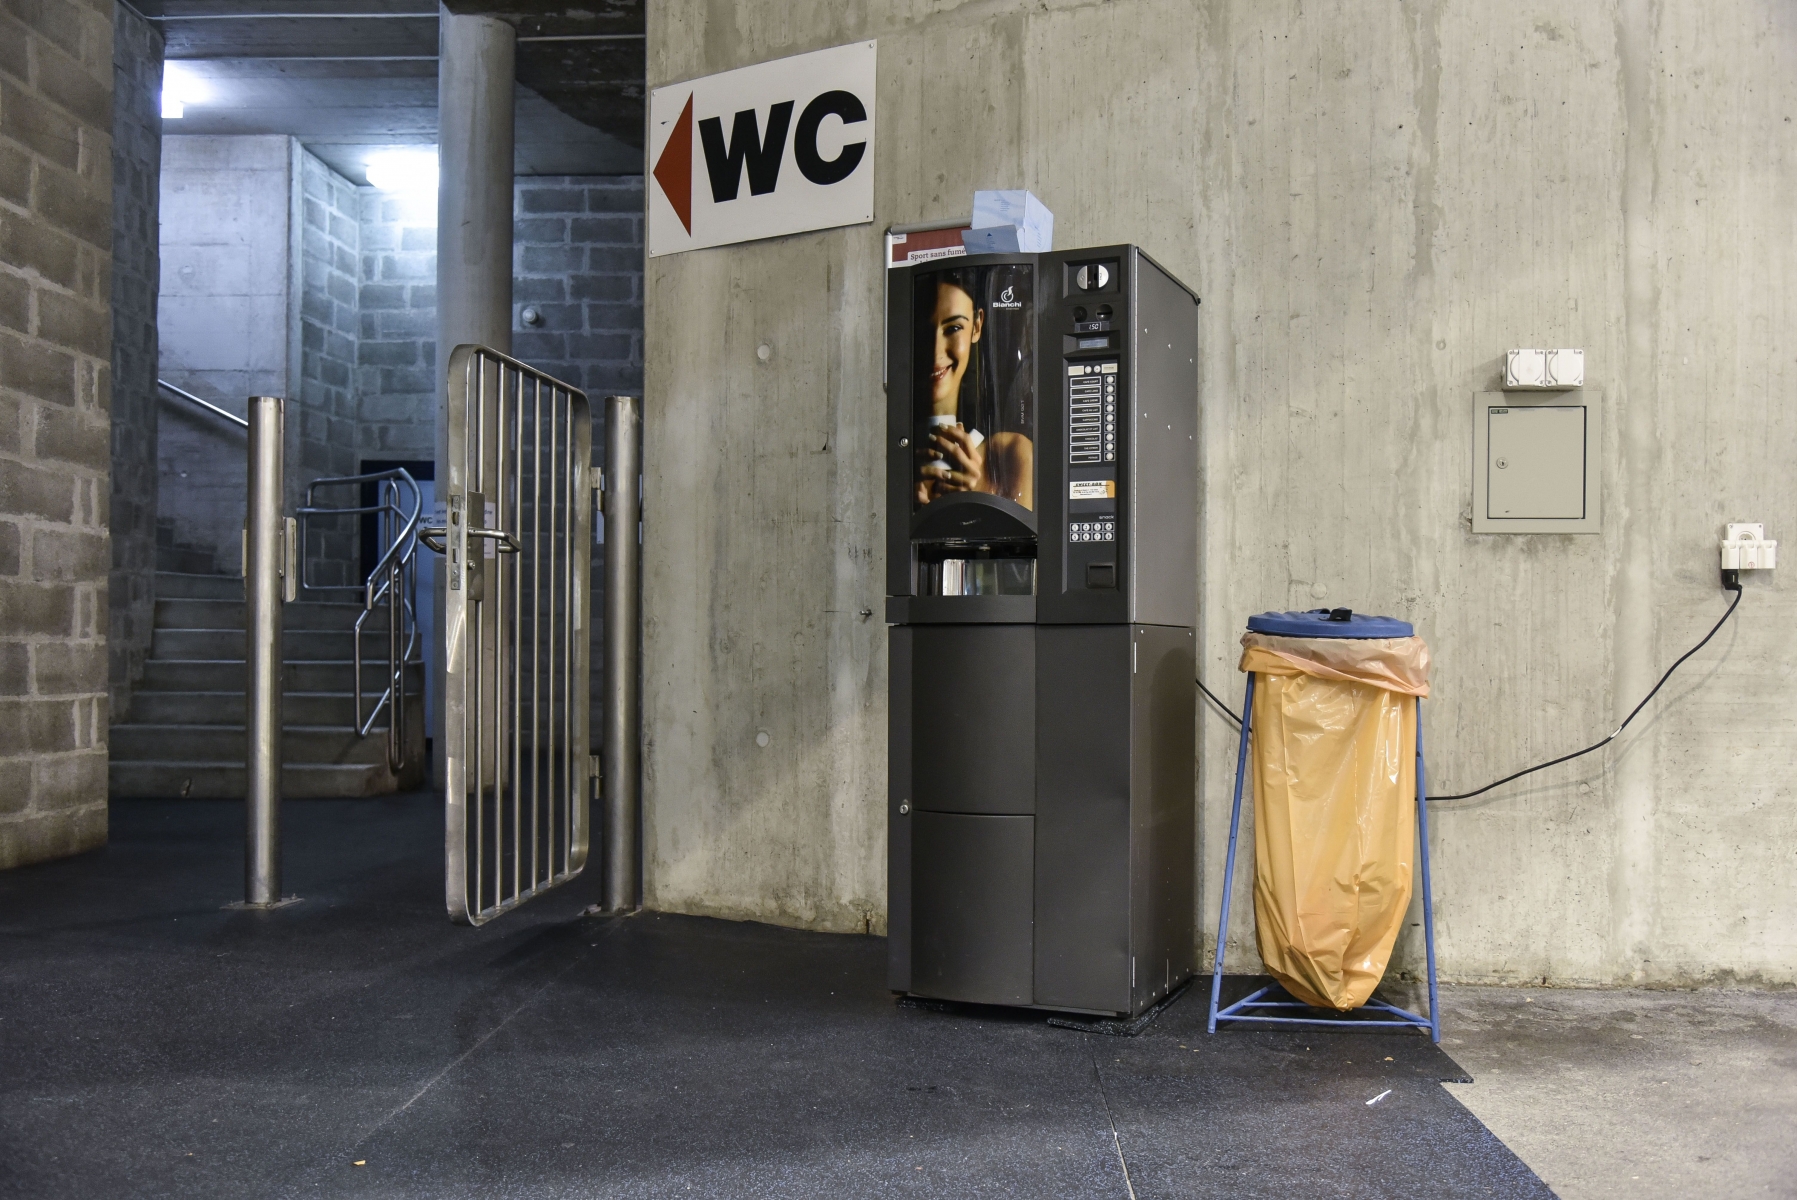 Le distributeur à boissons chaudes installé par la commune hors du bâtiment: une aberration, selon certains usagers de la patinoire.